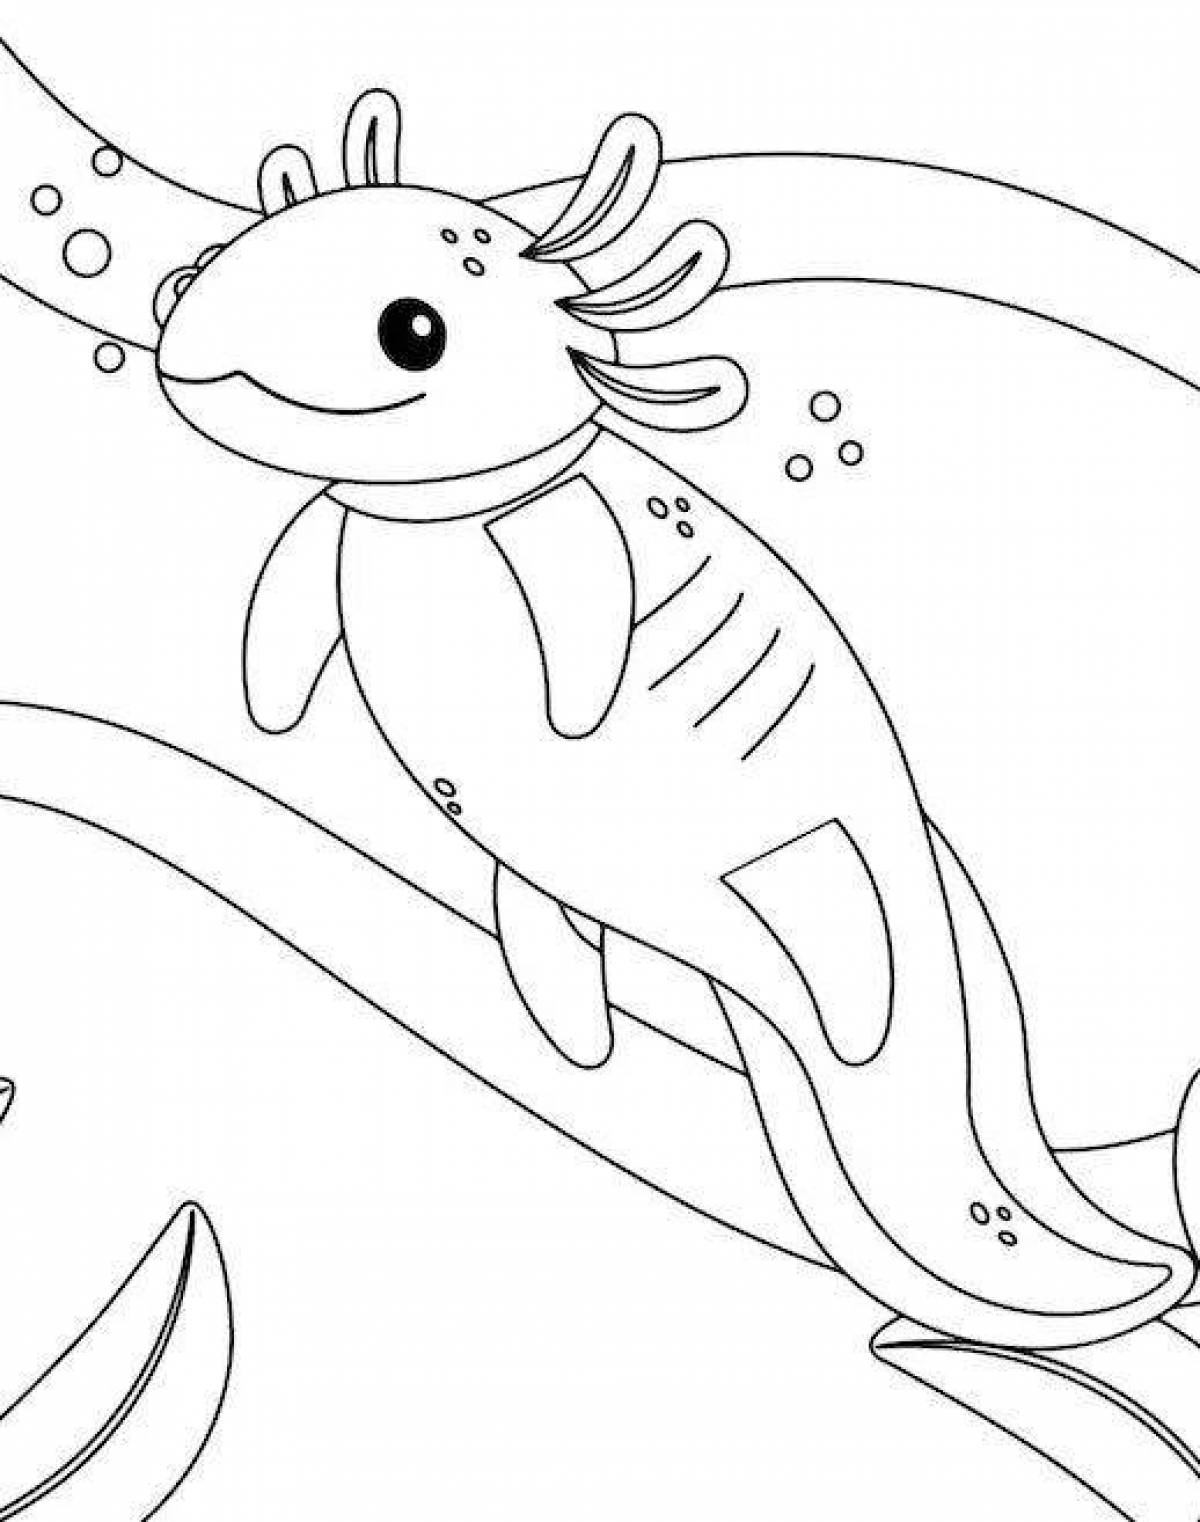 Handsome axolotl coloring book